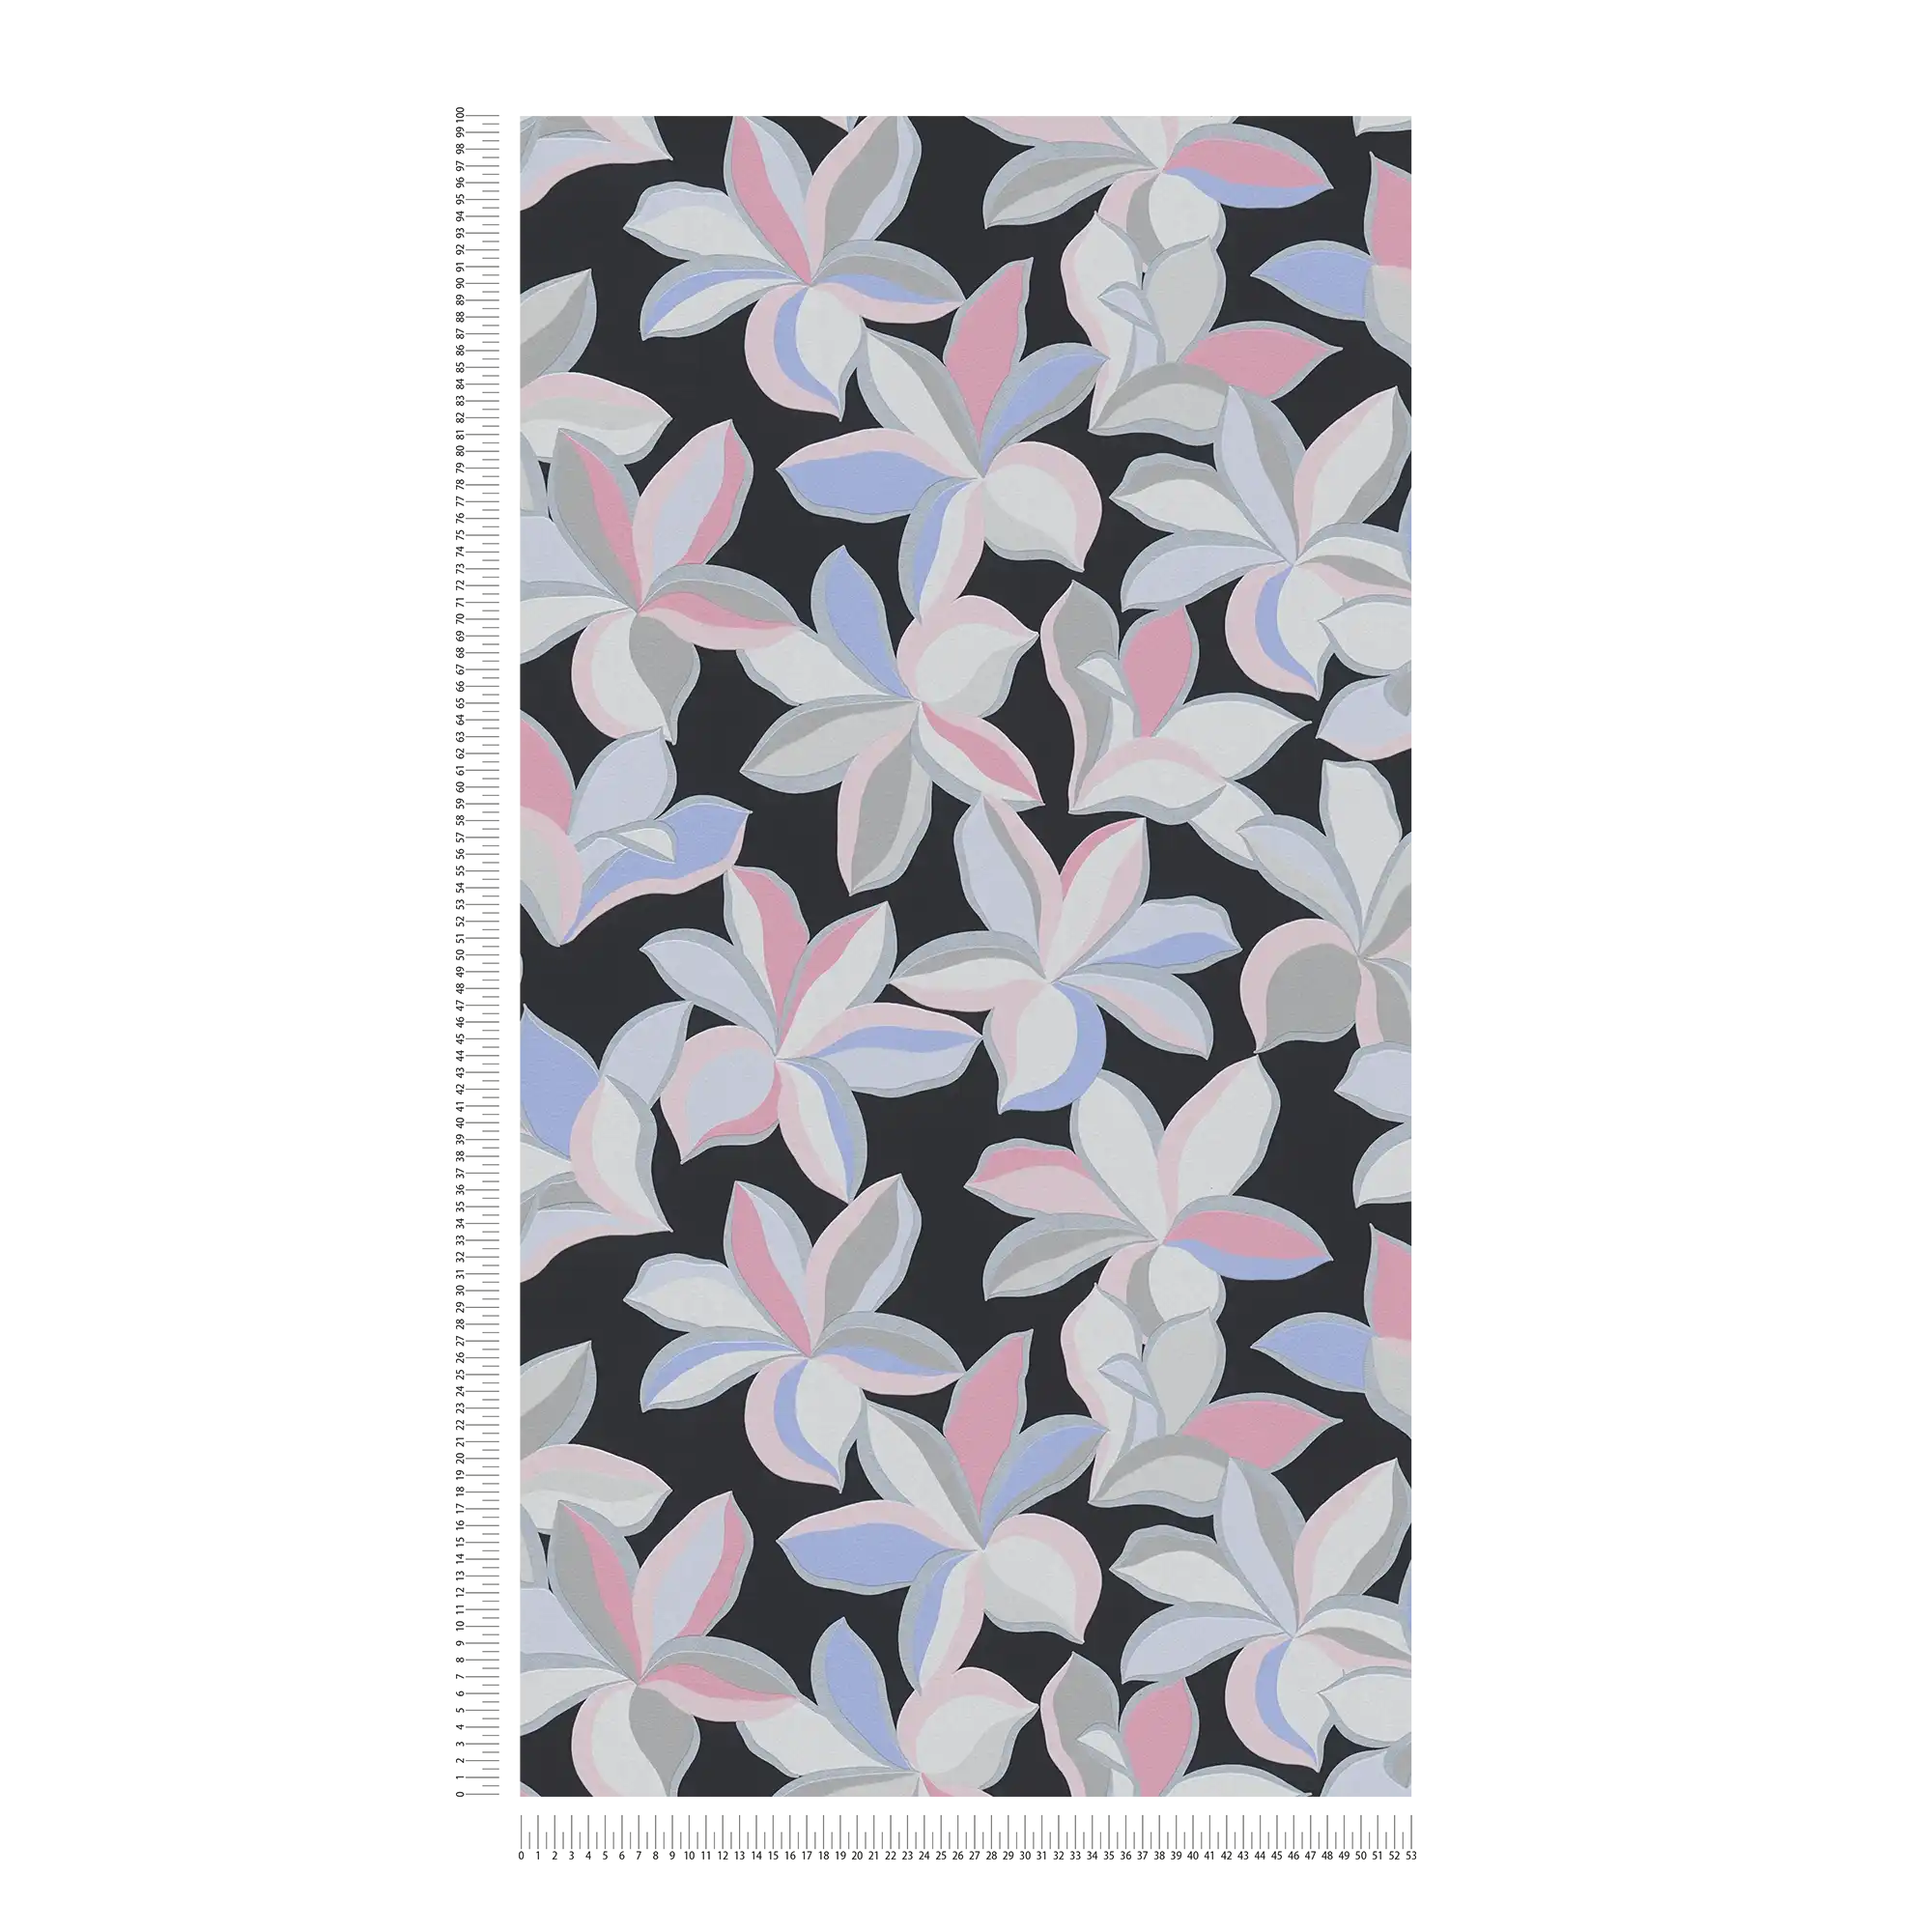             Bloemenpatroon met glanzend effect en fijne structuur - Zwart, Grijs, Roze
        